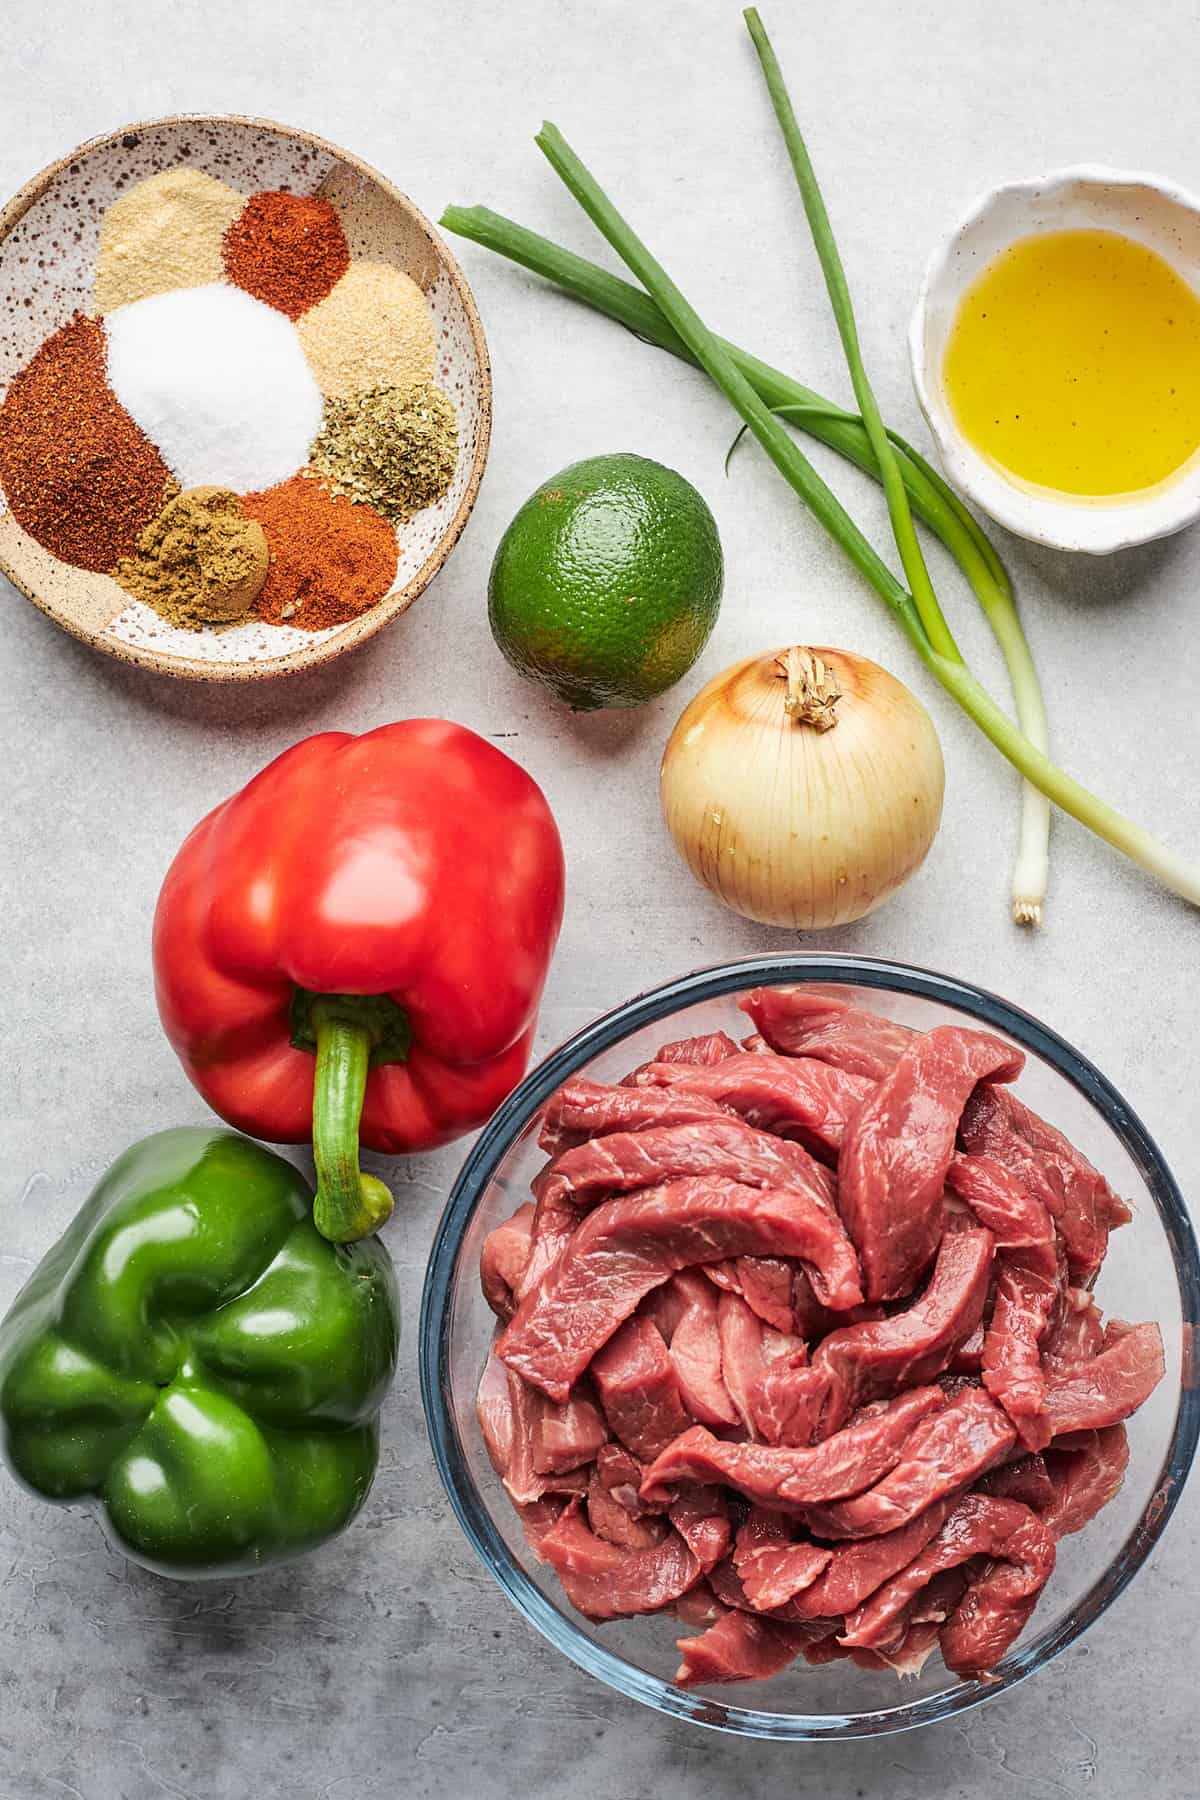 Sliced steak, peppers, onions and seasonings in bowls